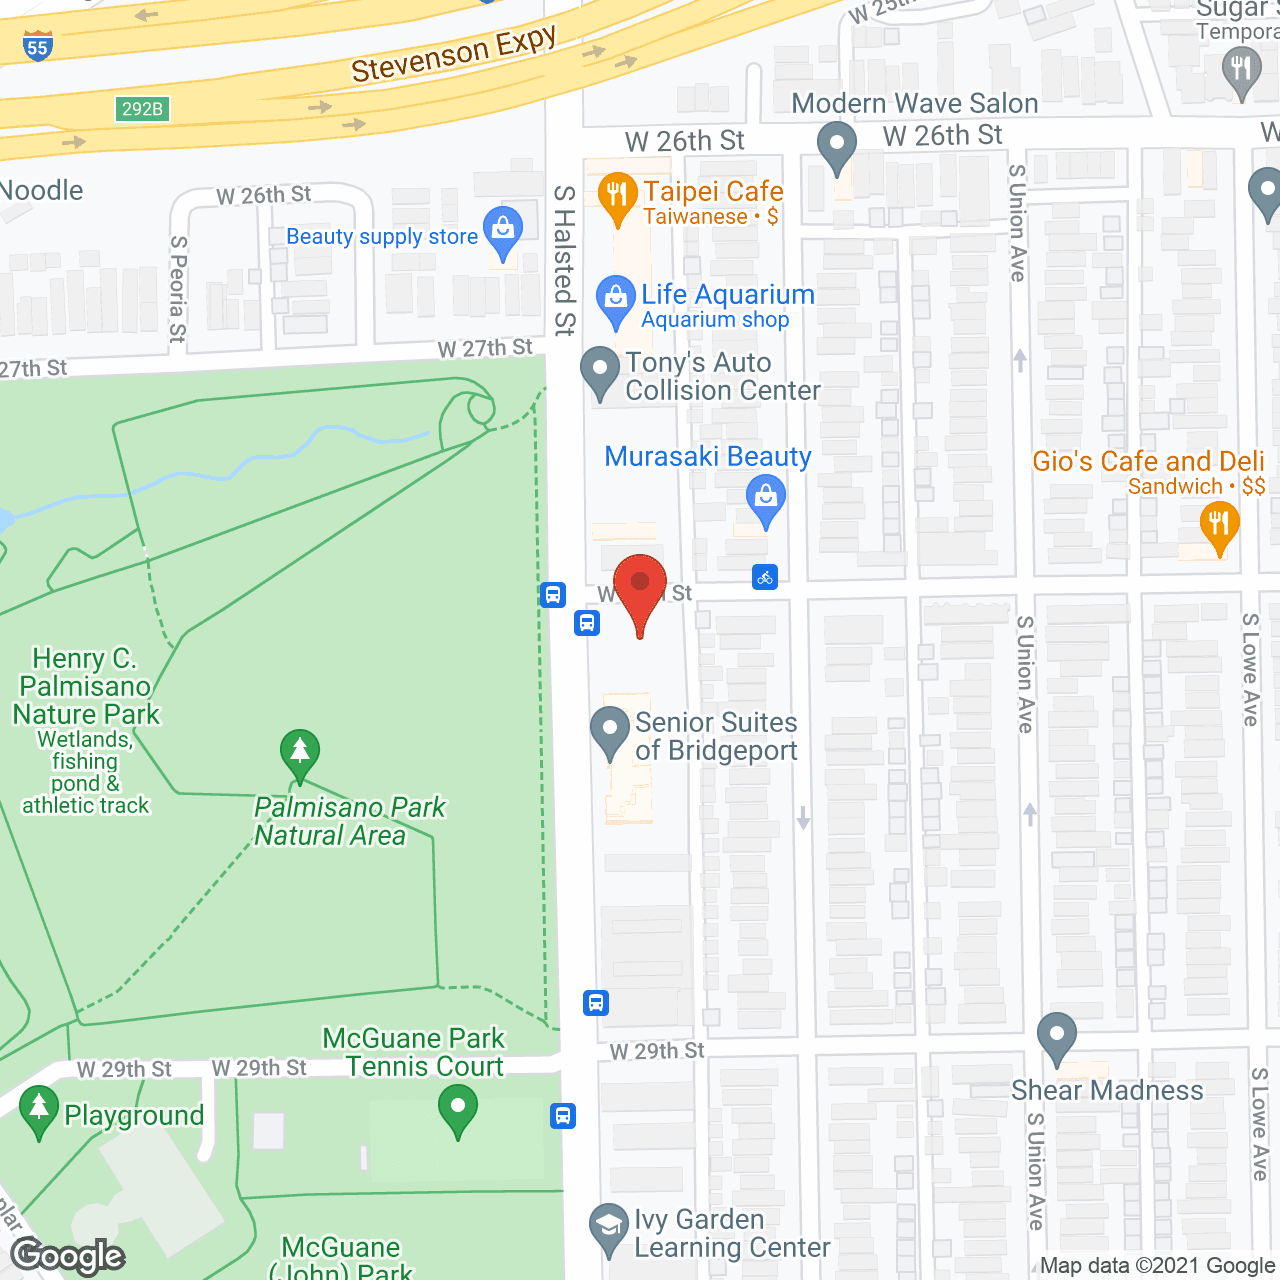 Senior Suites of Bridgeport in google map